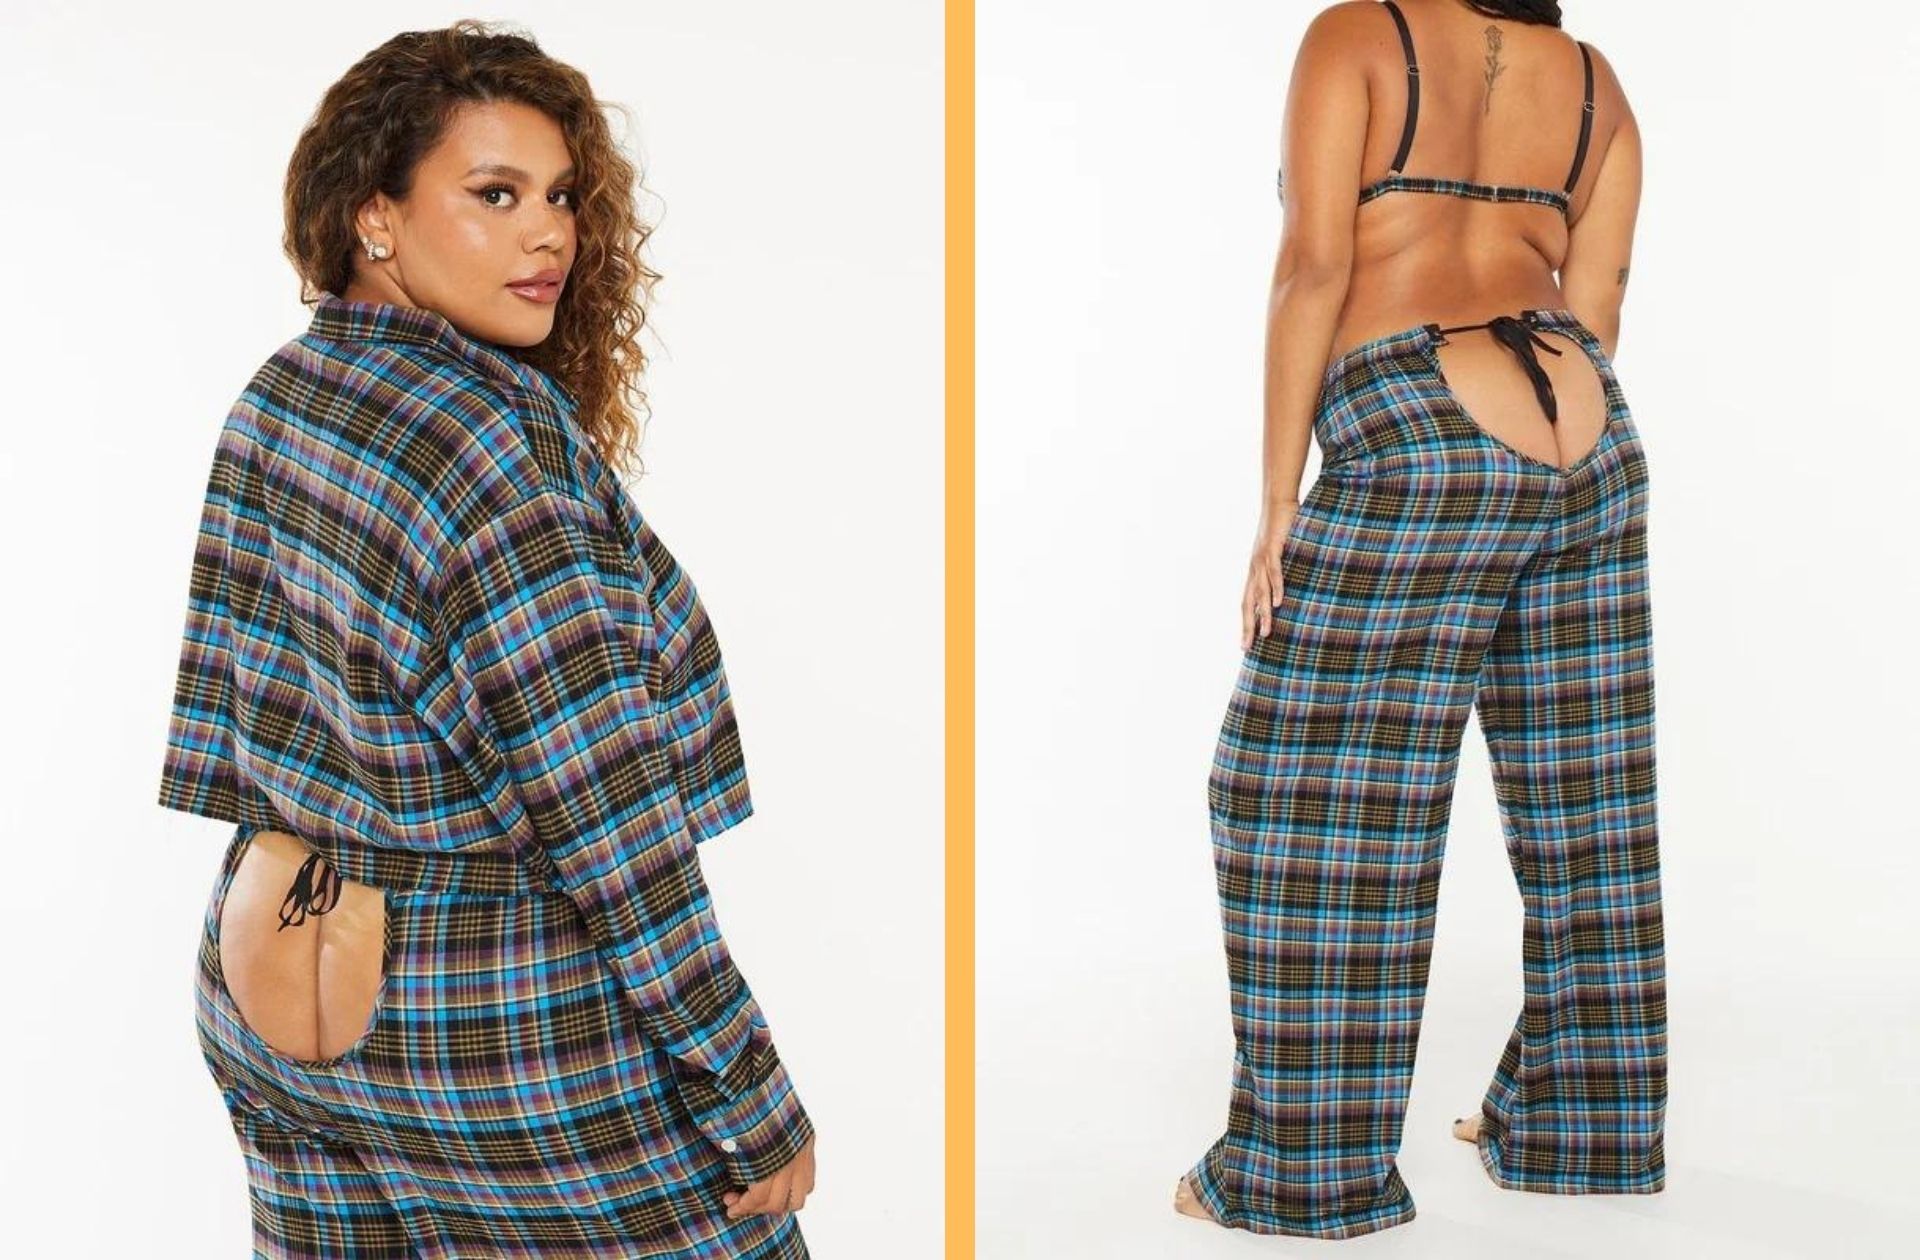 Pantalon de pyjama en tartan ouvert sur les fesses — Savage x Fenty — à partir de 12€.